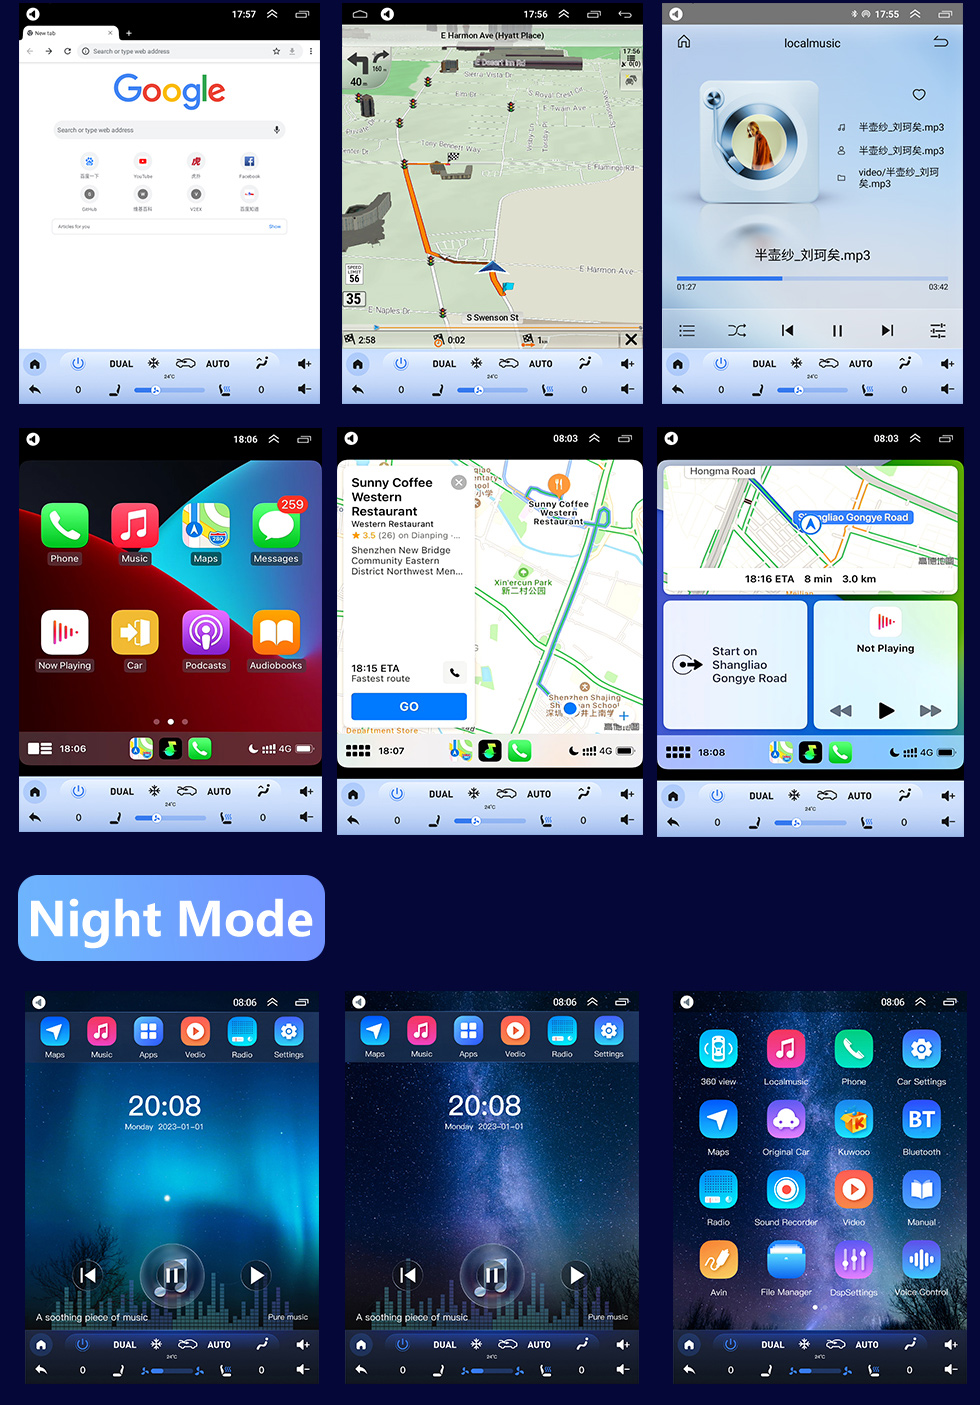 Seicane Android 10.0 9.7 pulgadas para 2006-2012 TOYOTA COROLLA Radio con pantalla táctil HD Sistema de navegación GPS Soporte Bluetooth Carplay TPMS